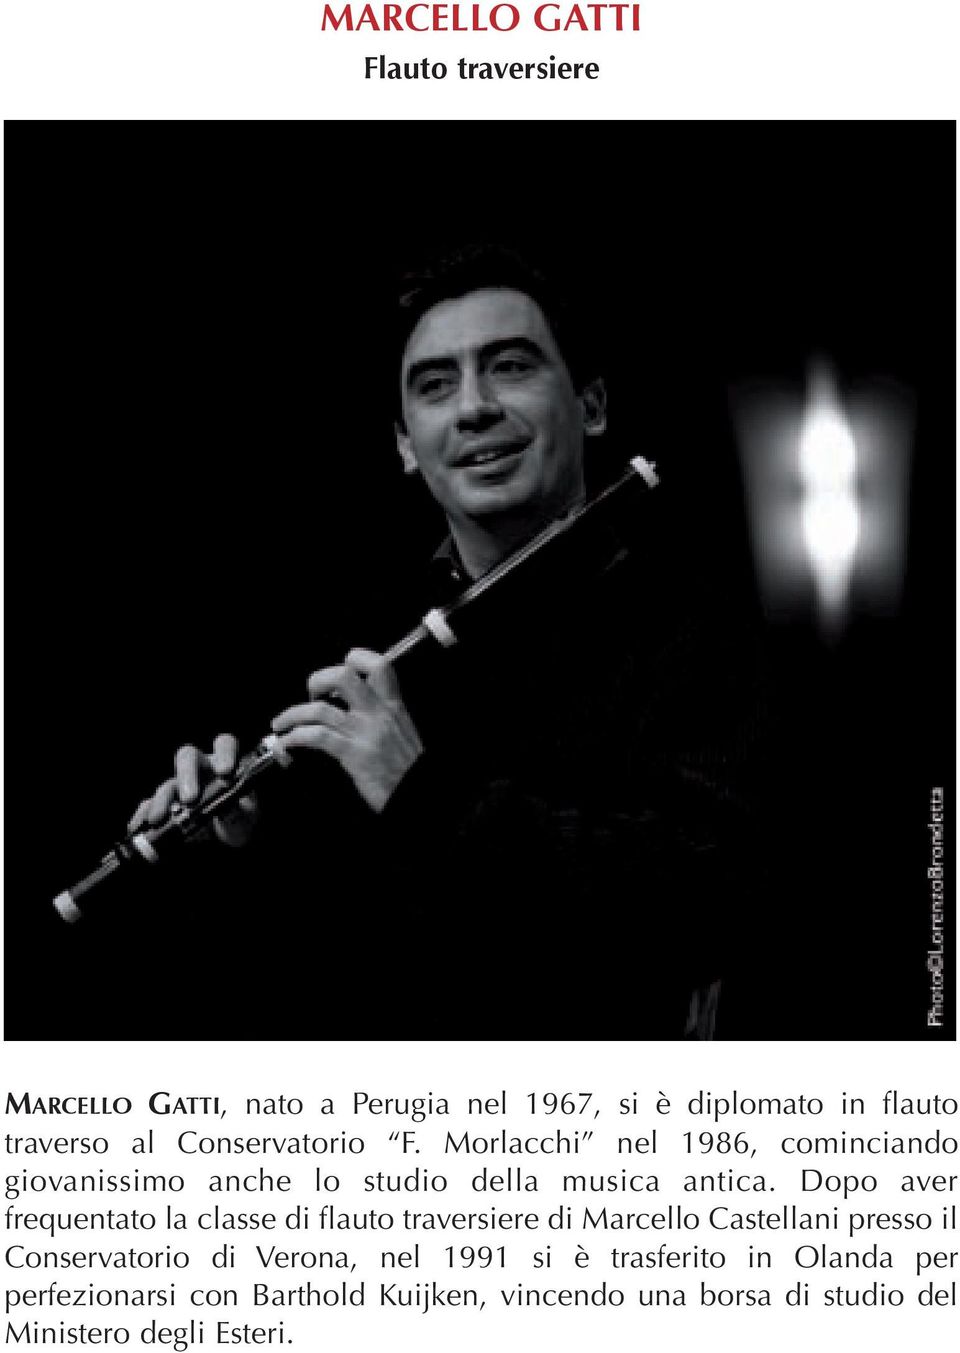 Dopo aver frequentato la classe di flauto traversiere di Marcello Castellani presso il Conservatorio di Verona,